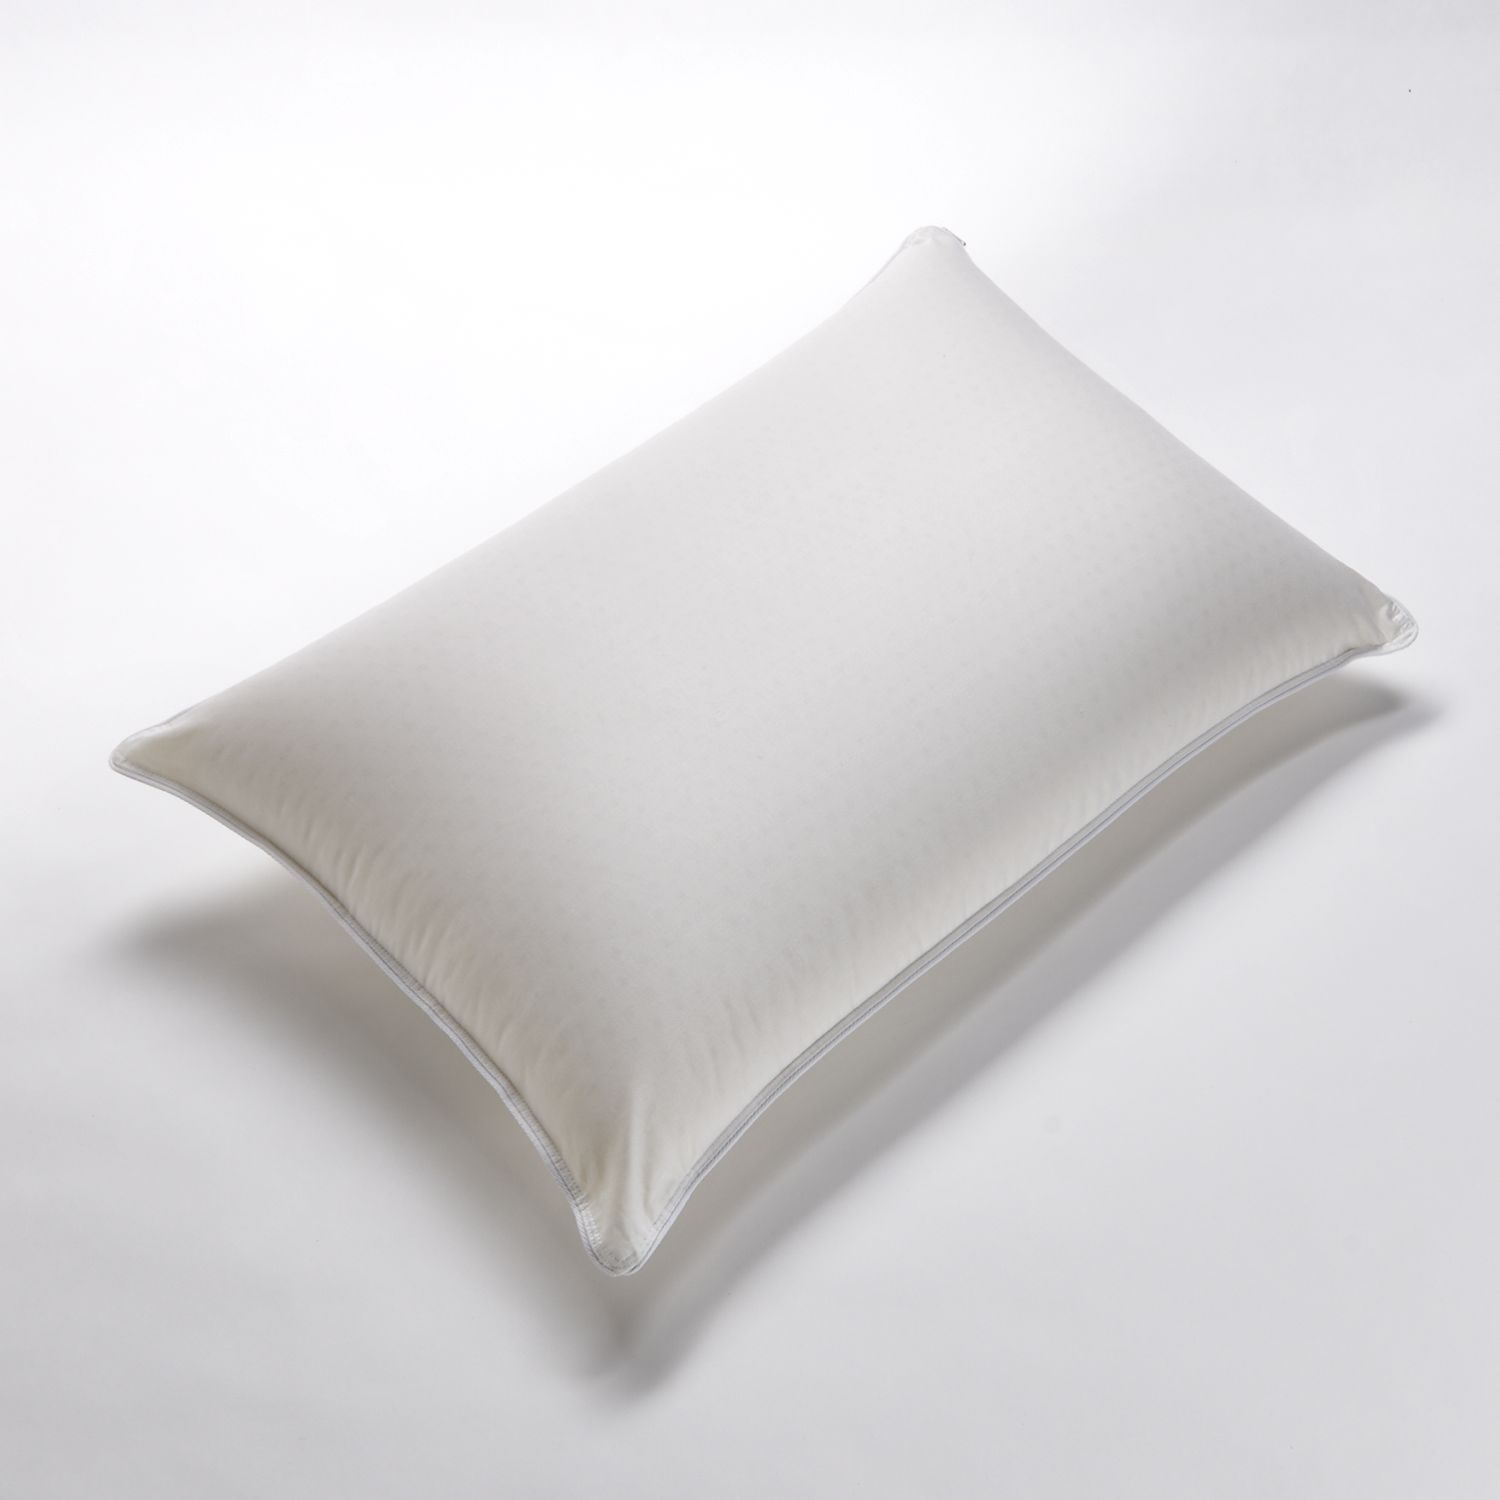 kohls latex pillow